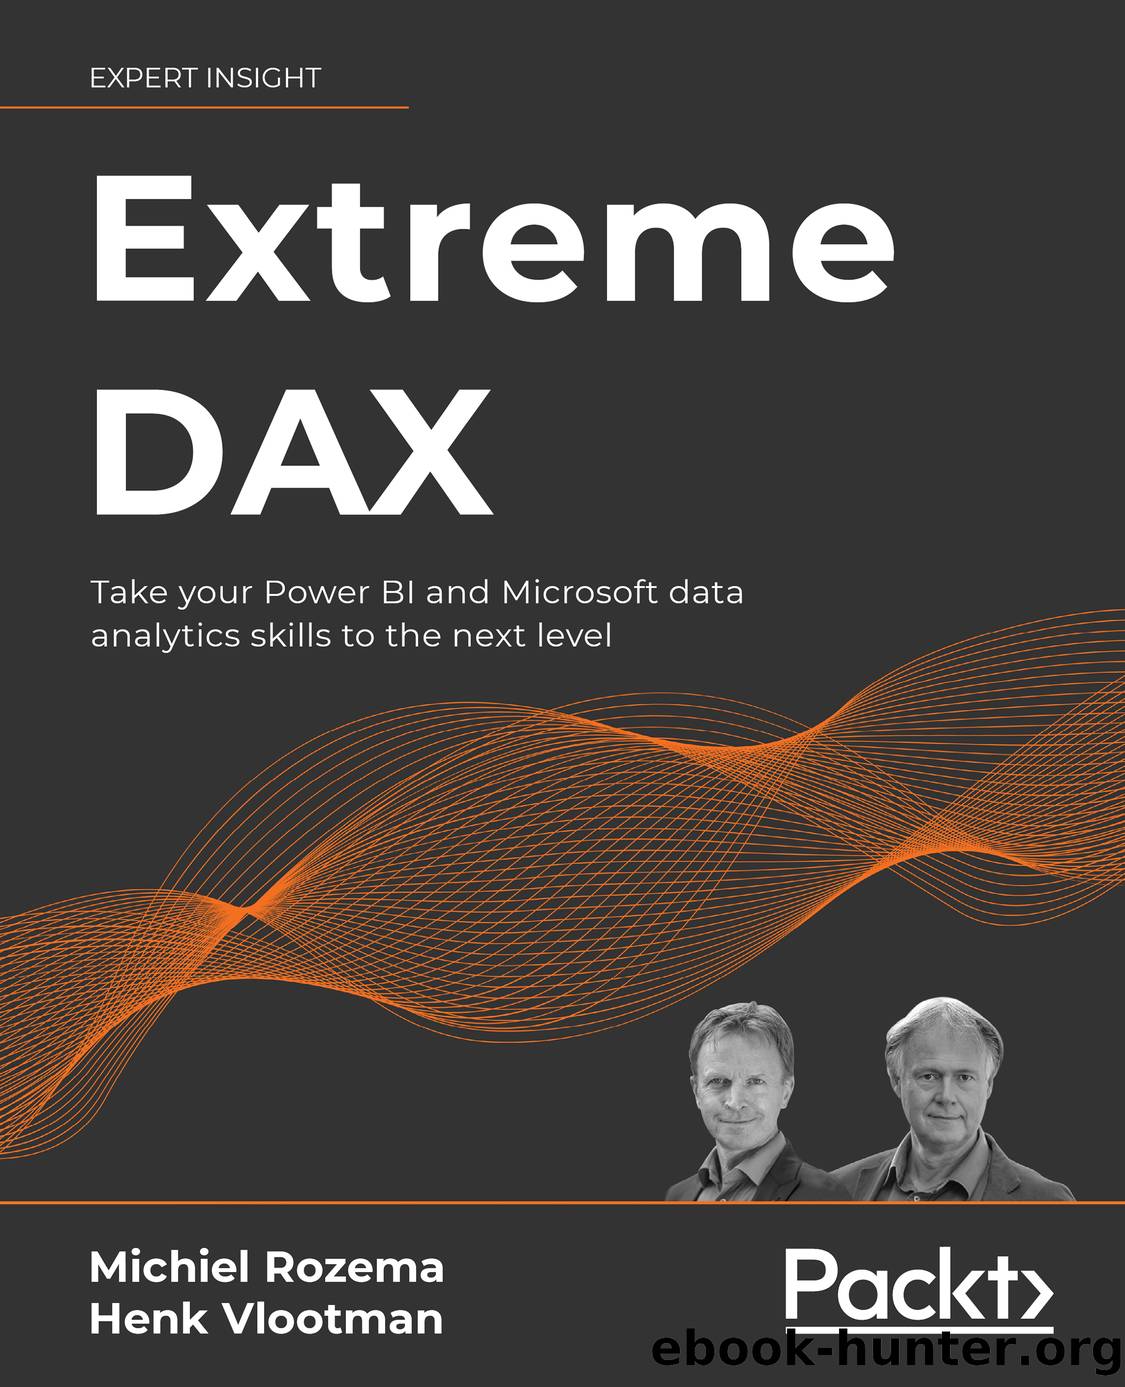 Extreme DAX by Michiel Rozema & Henk Vlootman